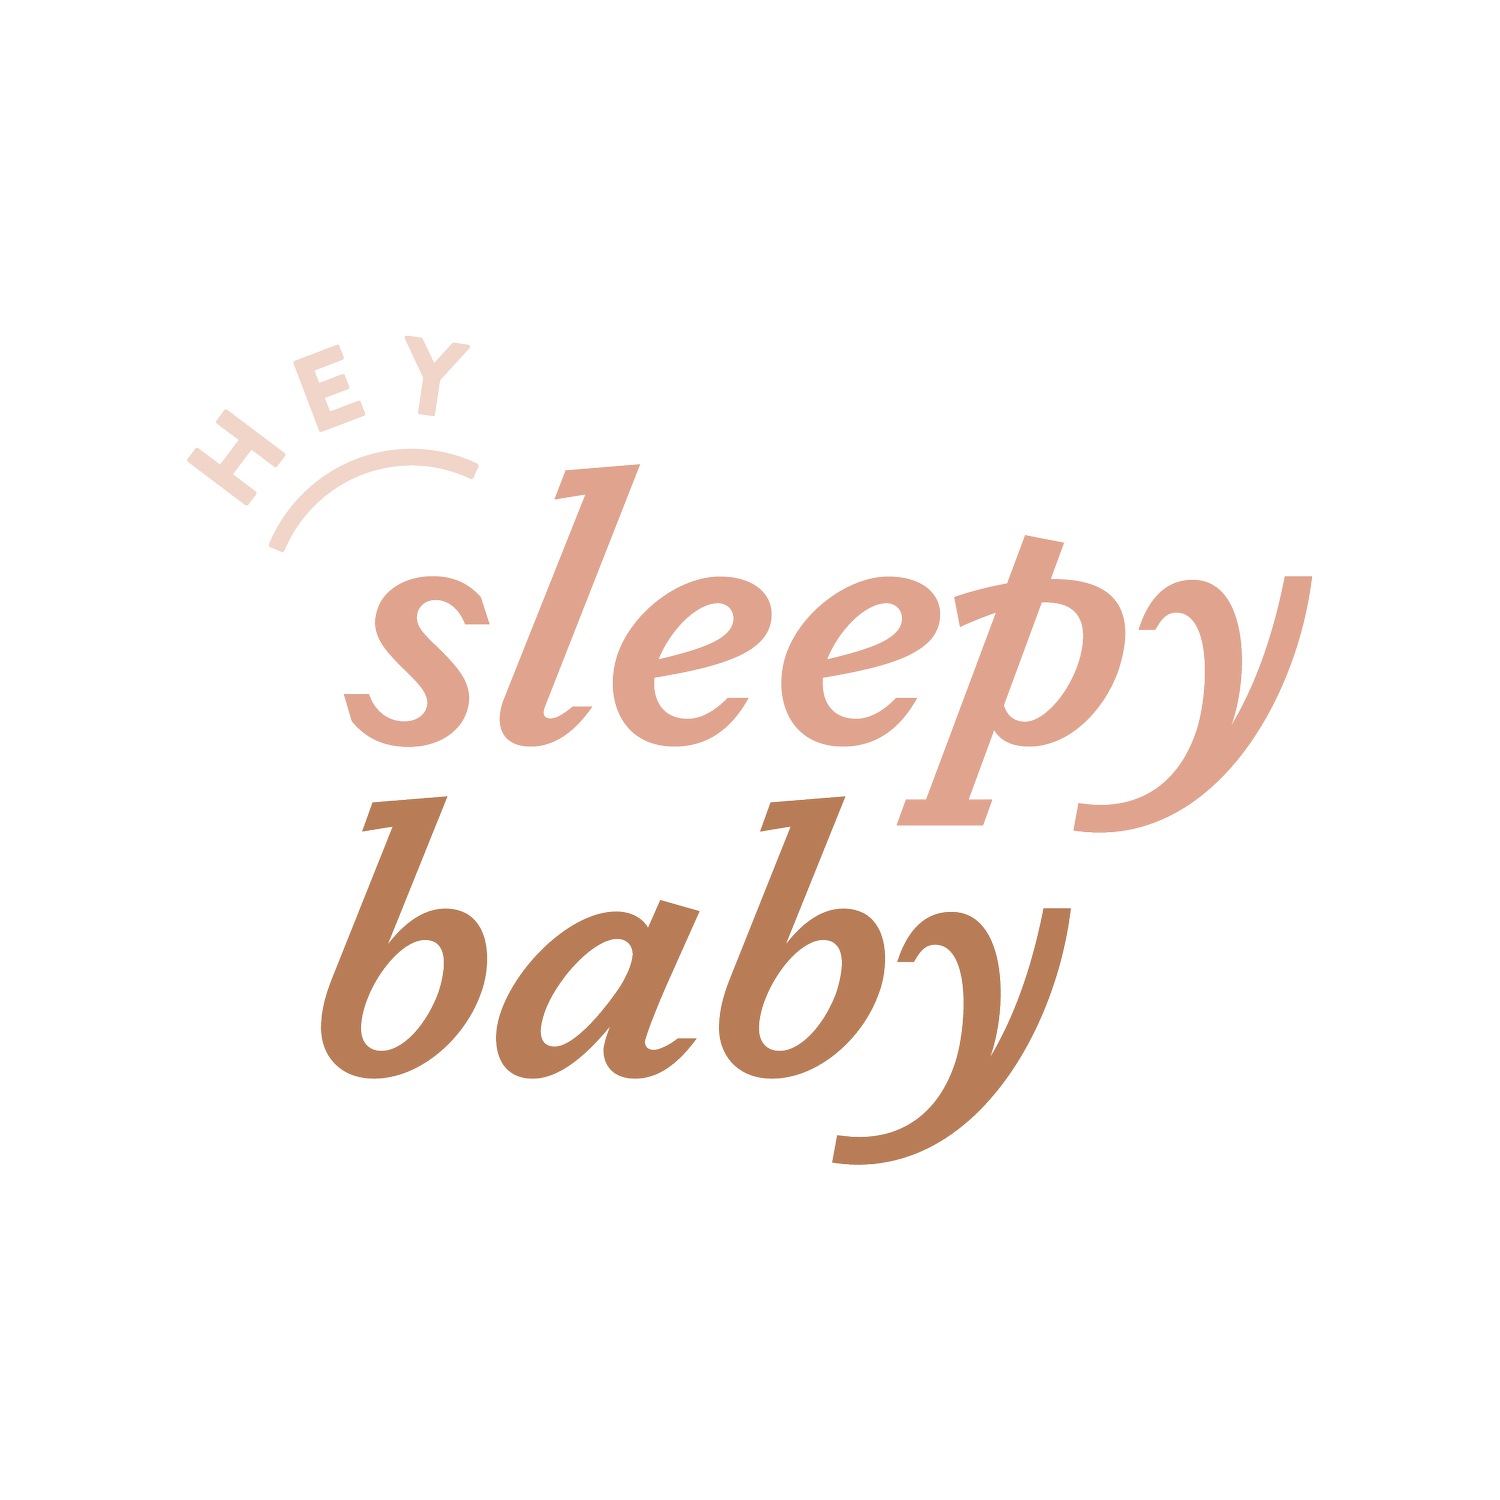 Hey, Sleepy Baby